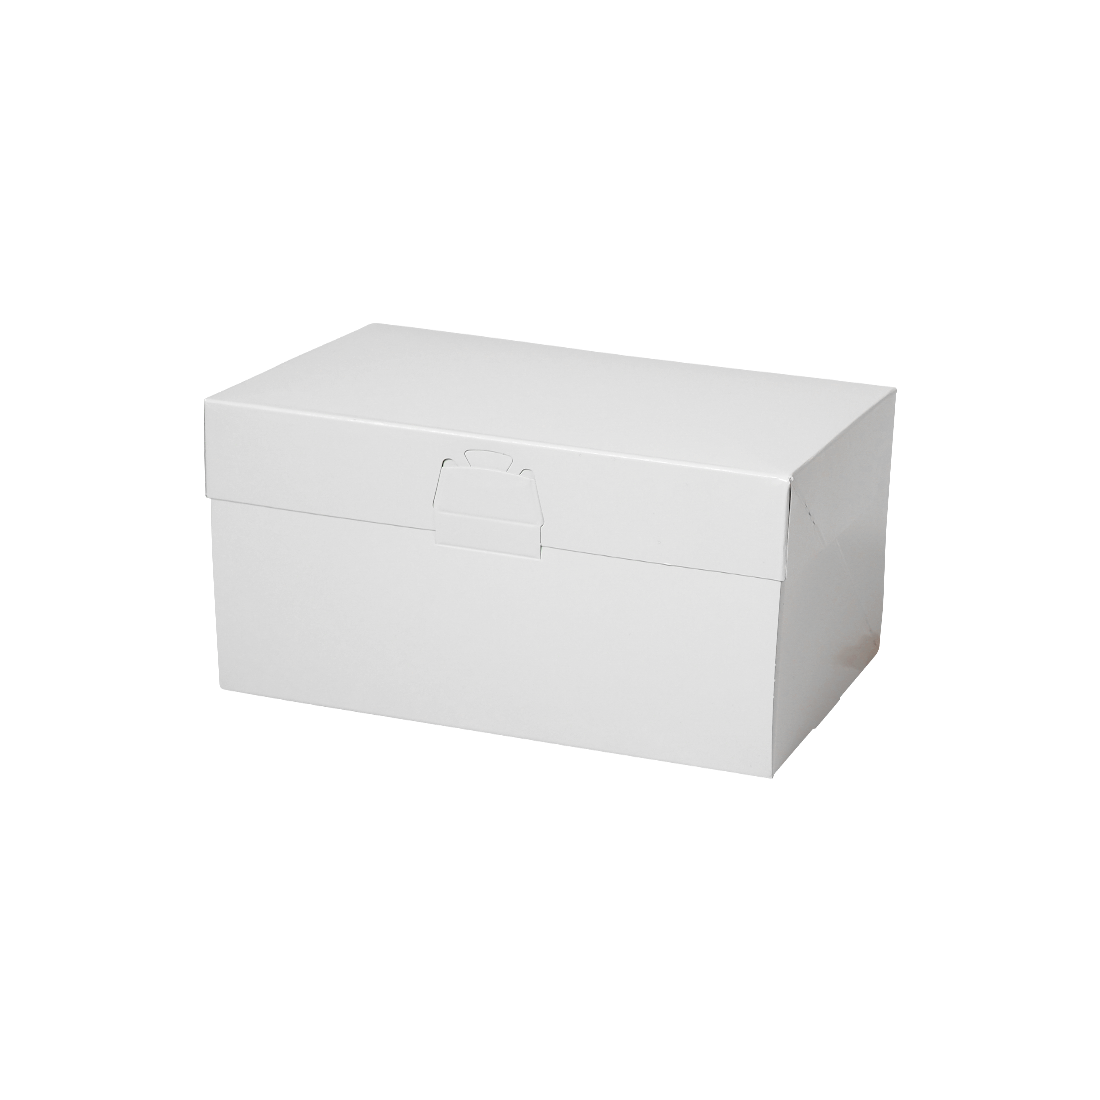 ロックBOX 105-ホワイト 5×7